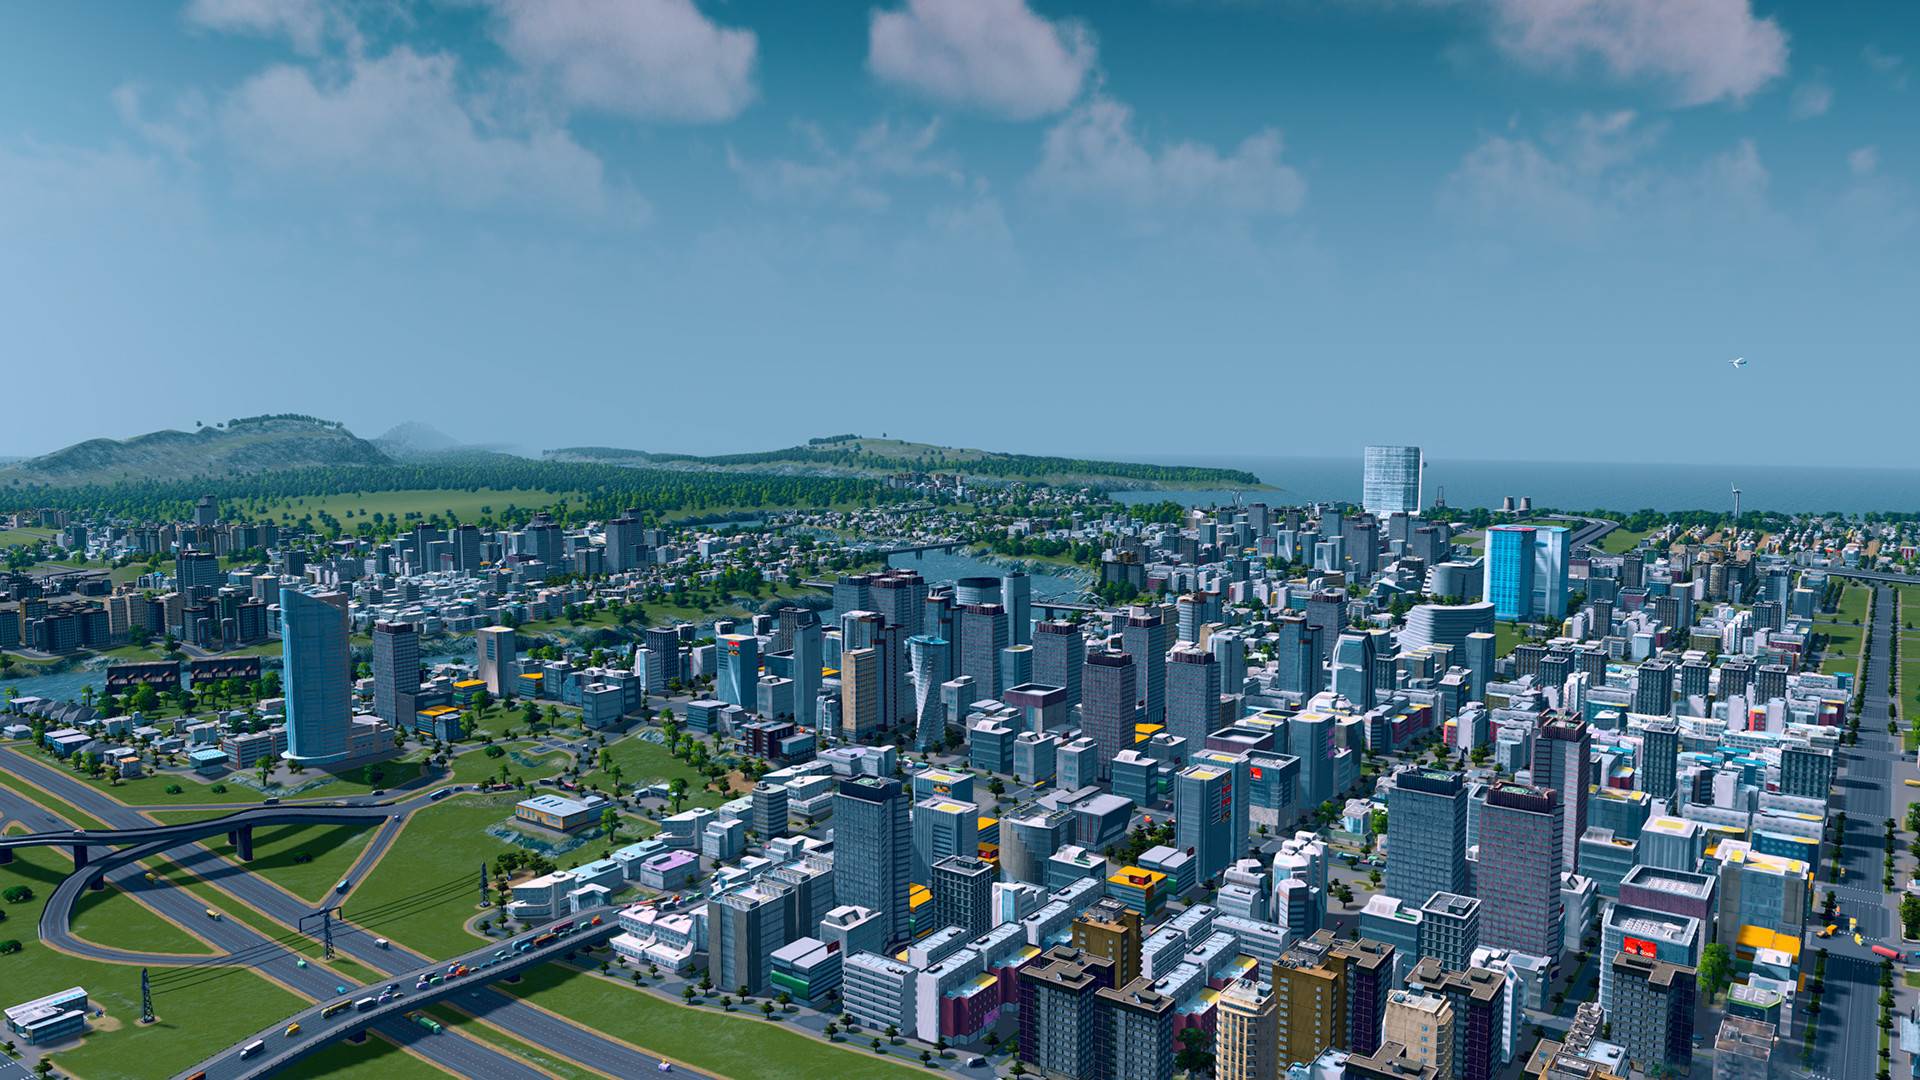 Najlepsze gry budujące miasta: miasta: Skylines. Obraz pokazuje rozległe miasto pełne drapaczy drapaczy